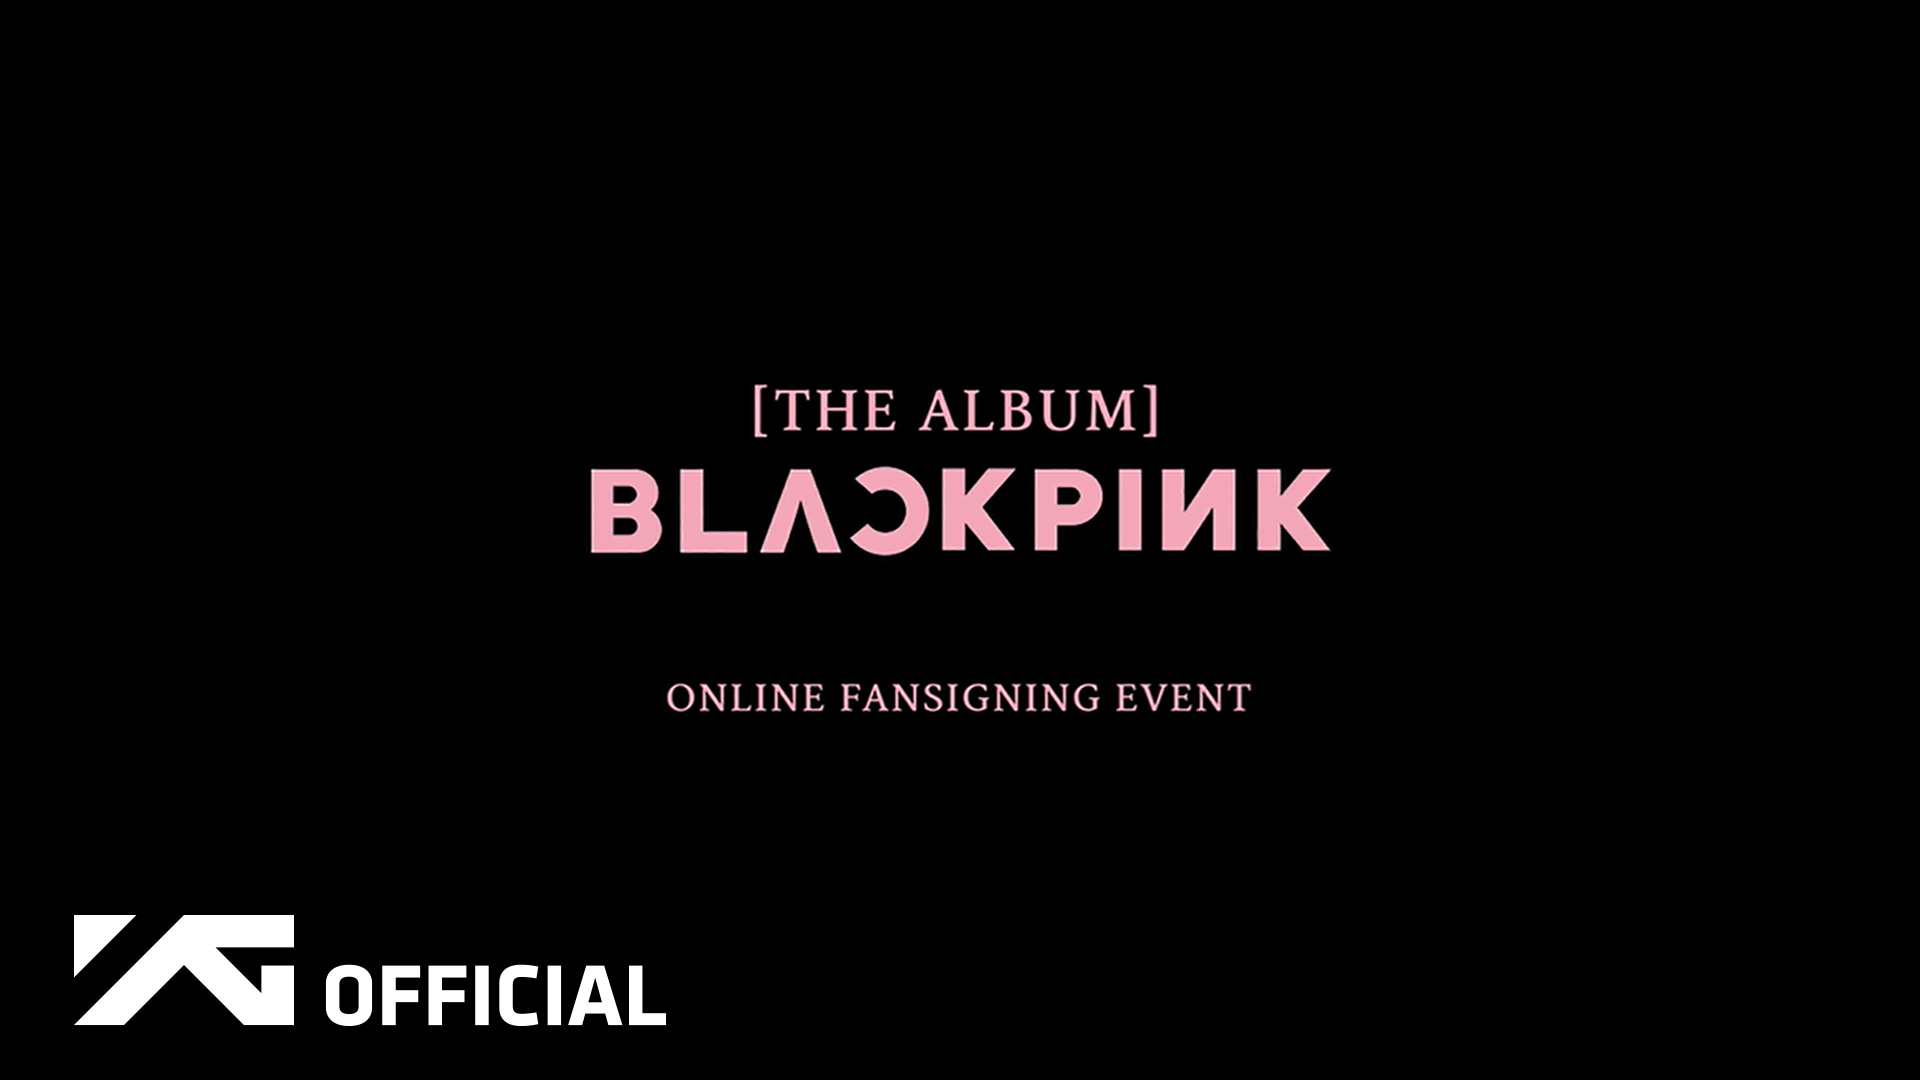 BLACKPINK - [THE ALBUM] ONLINE FANSIGNING EVENT